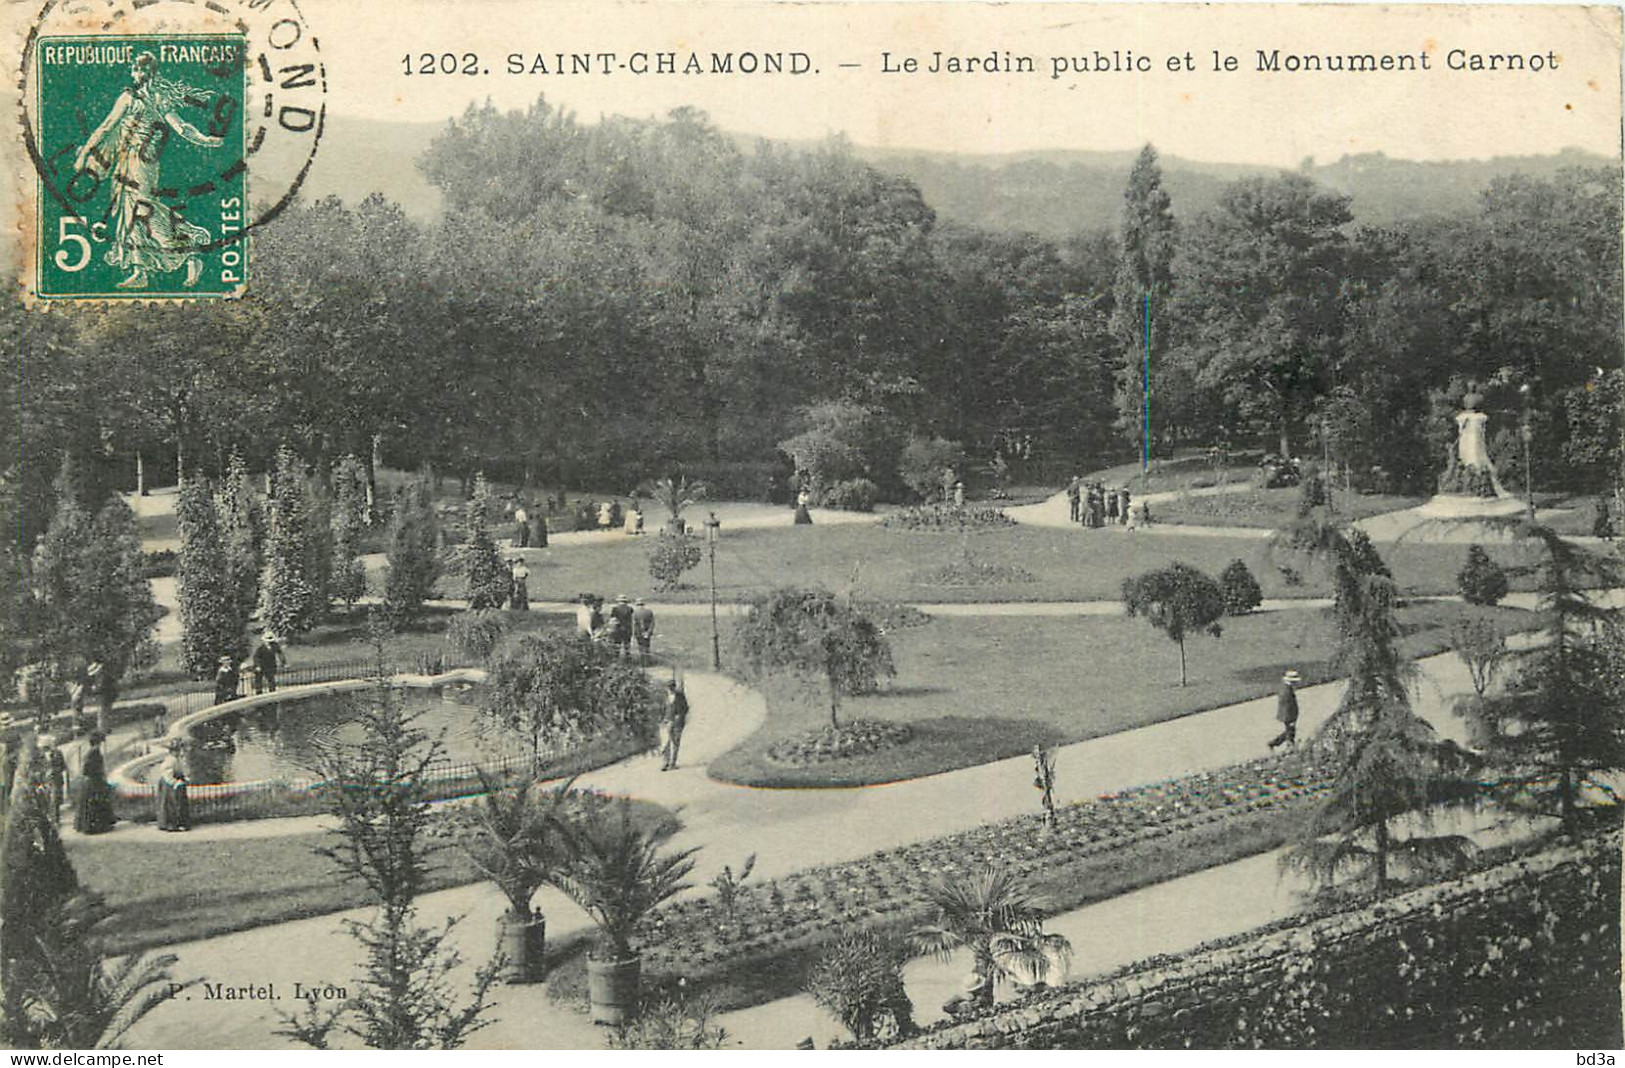  42  SAINT CHAMOND   Le Jardin Public Et Le Monument Carnot - Saint Chamond